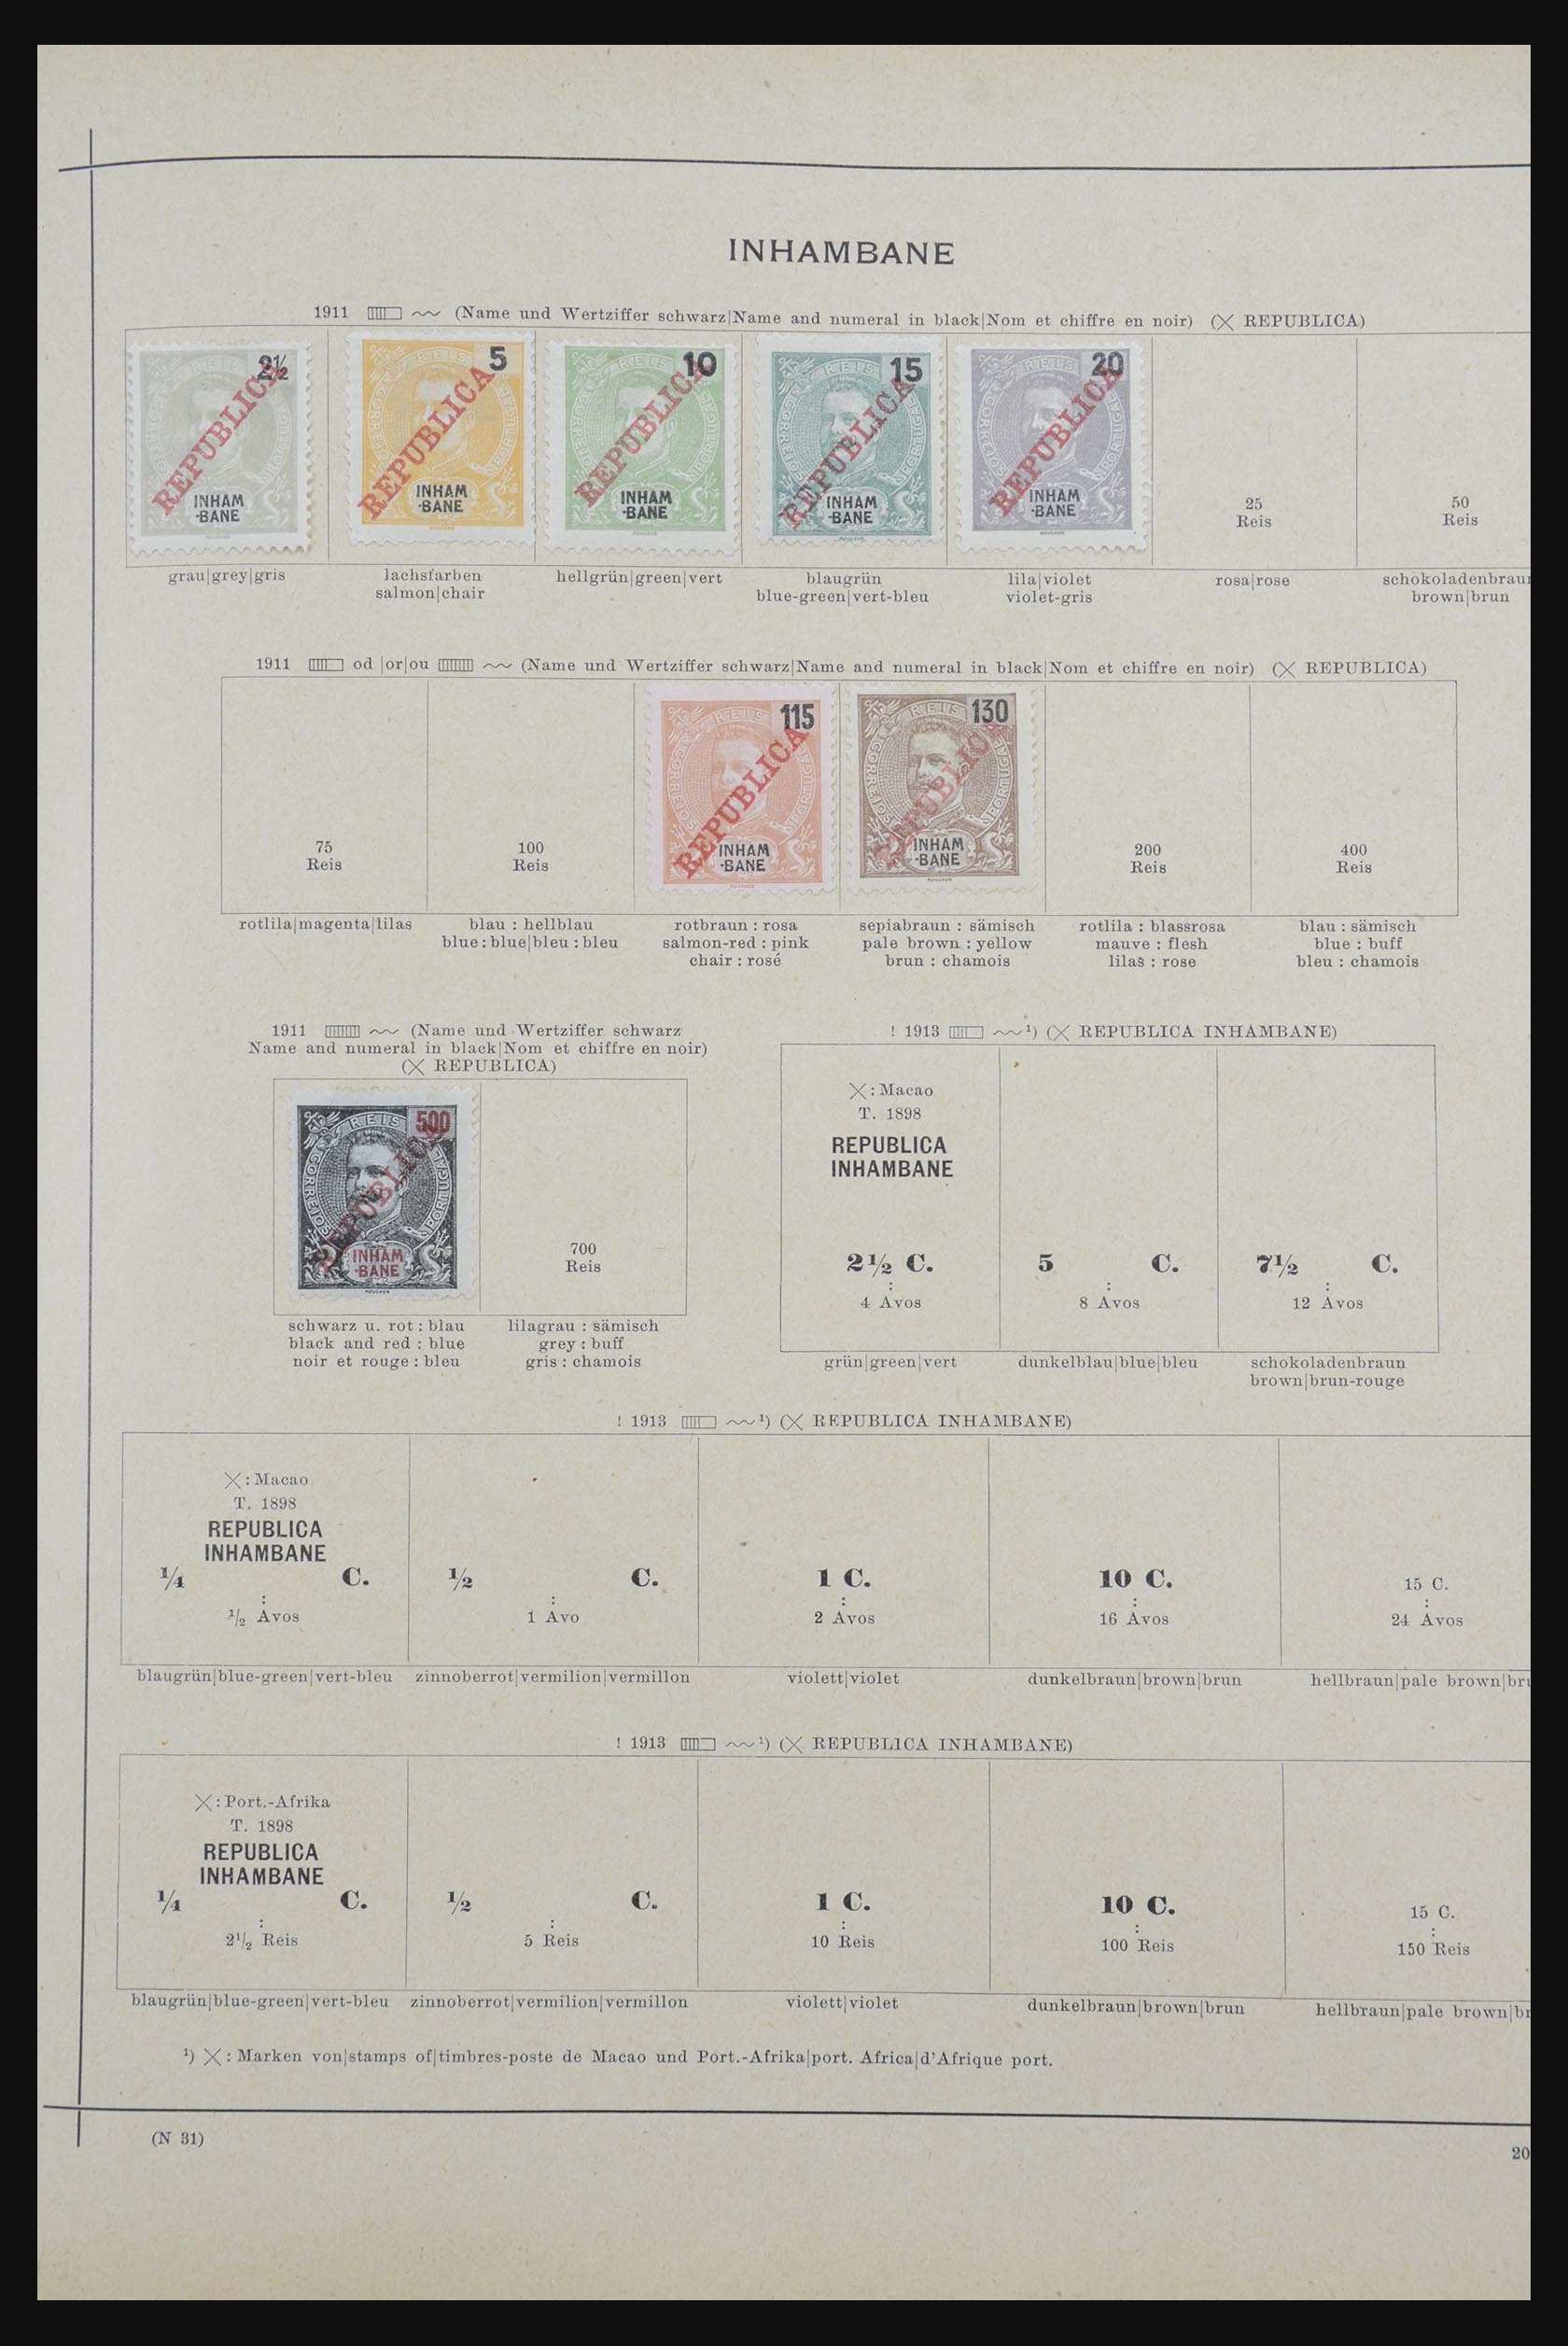 32070 077 - 32070 Portugal en koloniën 1857-1953.